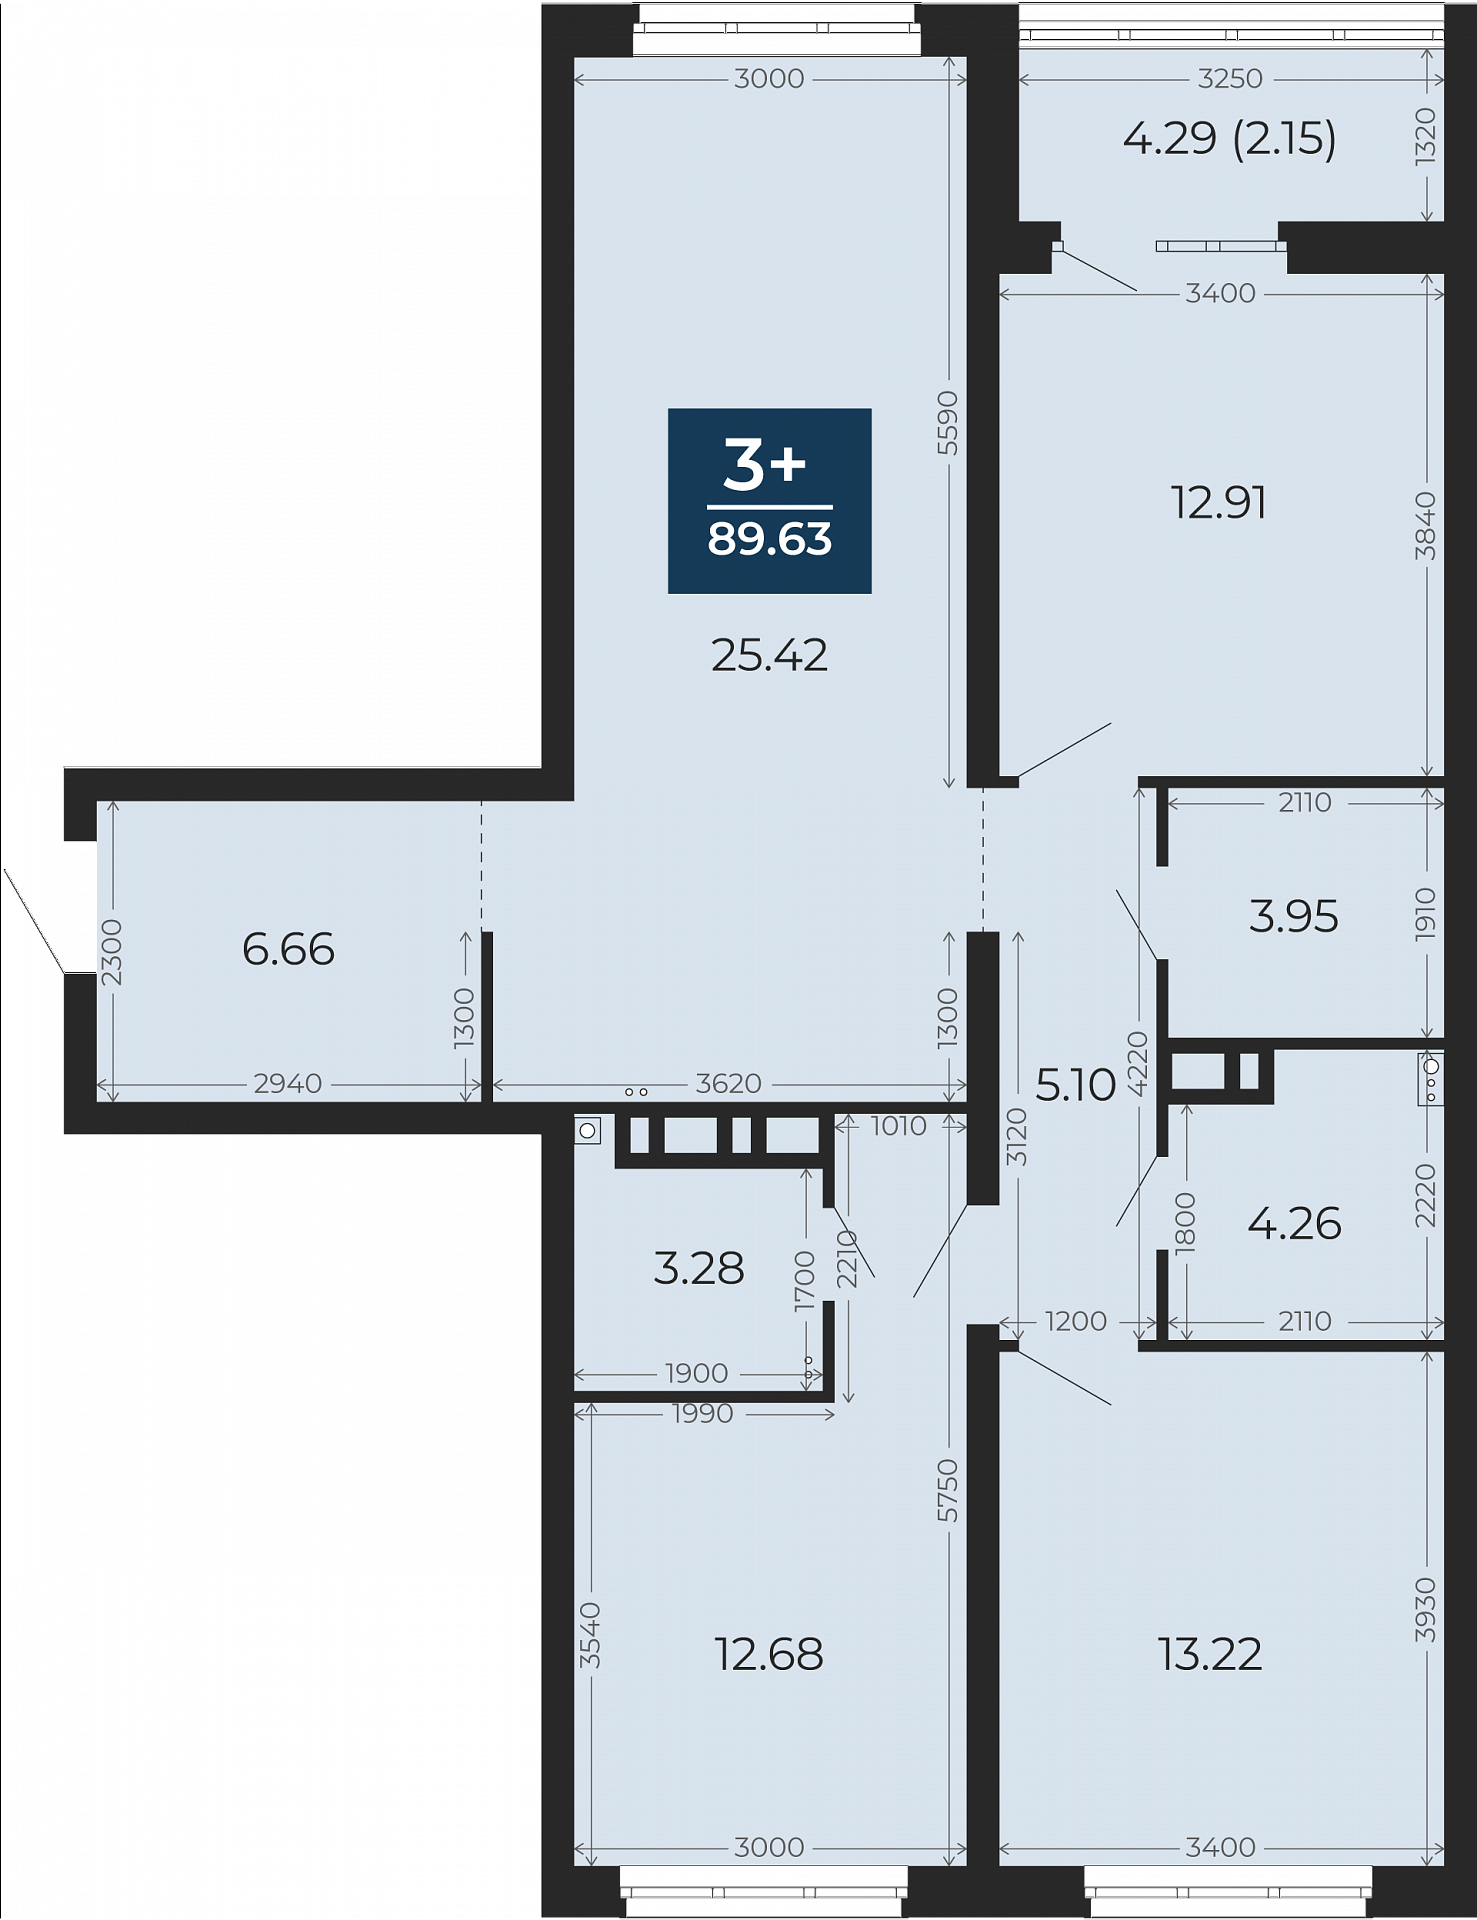 Квартира № 5, 3-комнатная, 89.63 кв. м, 2 этаж